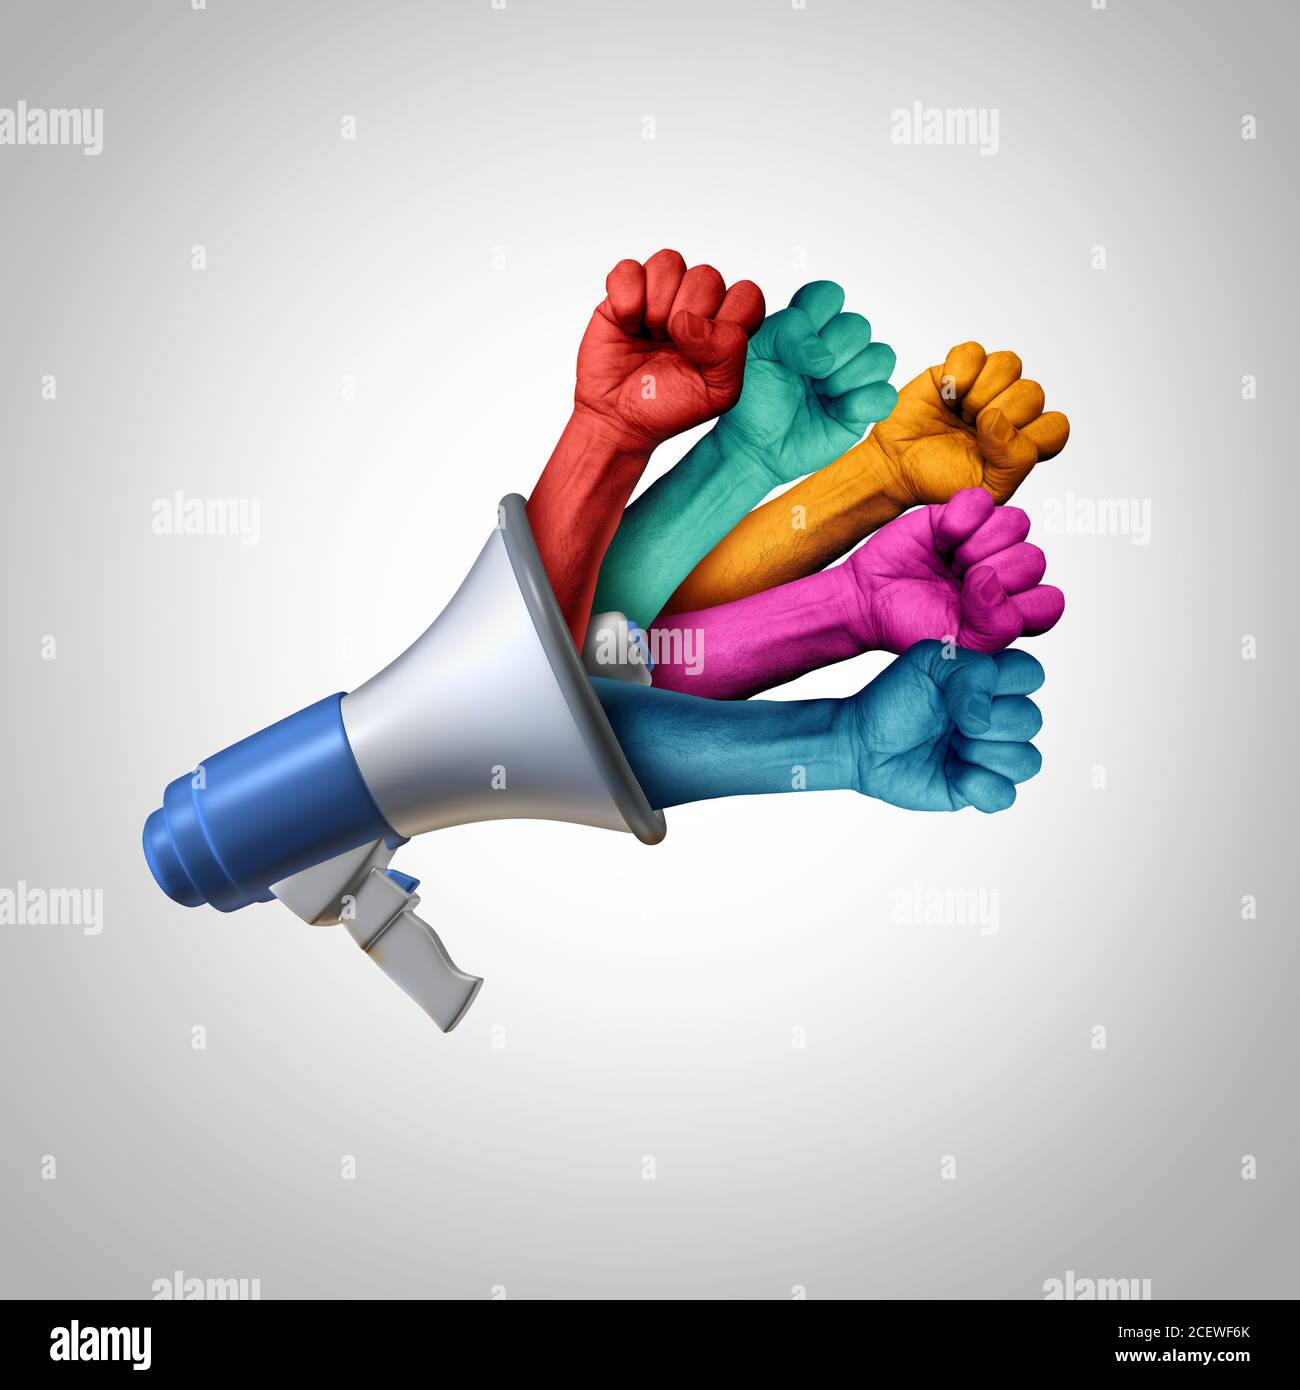 Mensaje de derechos sociales y comunicación de justicia para la igualdad y la democracia con elementos ilustrativos en 3D. Foto de stock